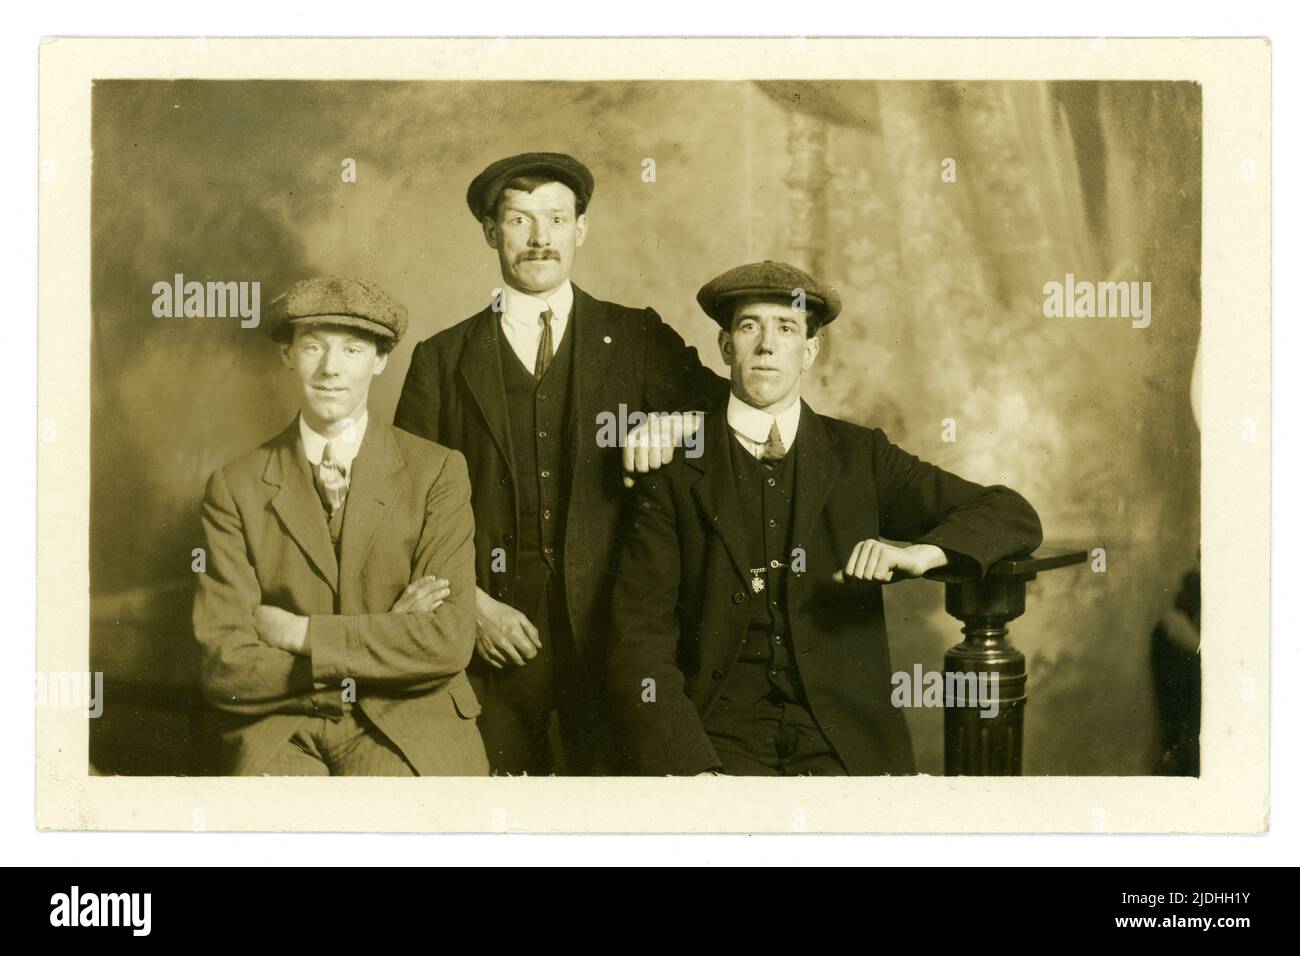 Original und klar Anfang des 20. Jahrhunderts Studio-Portrait-Gruppe von 3 Männern aus der Arbeiterklasse mit flachen Kappen, möglicherweise ein WW1 eingesandtes Foto von Freunden, Studio des Fotografen, Cuttriss, Neville Street, Newcastle-on-Tyne, Großbritannien ca. 1914-1919, Stockfoto